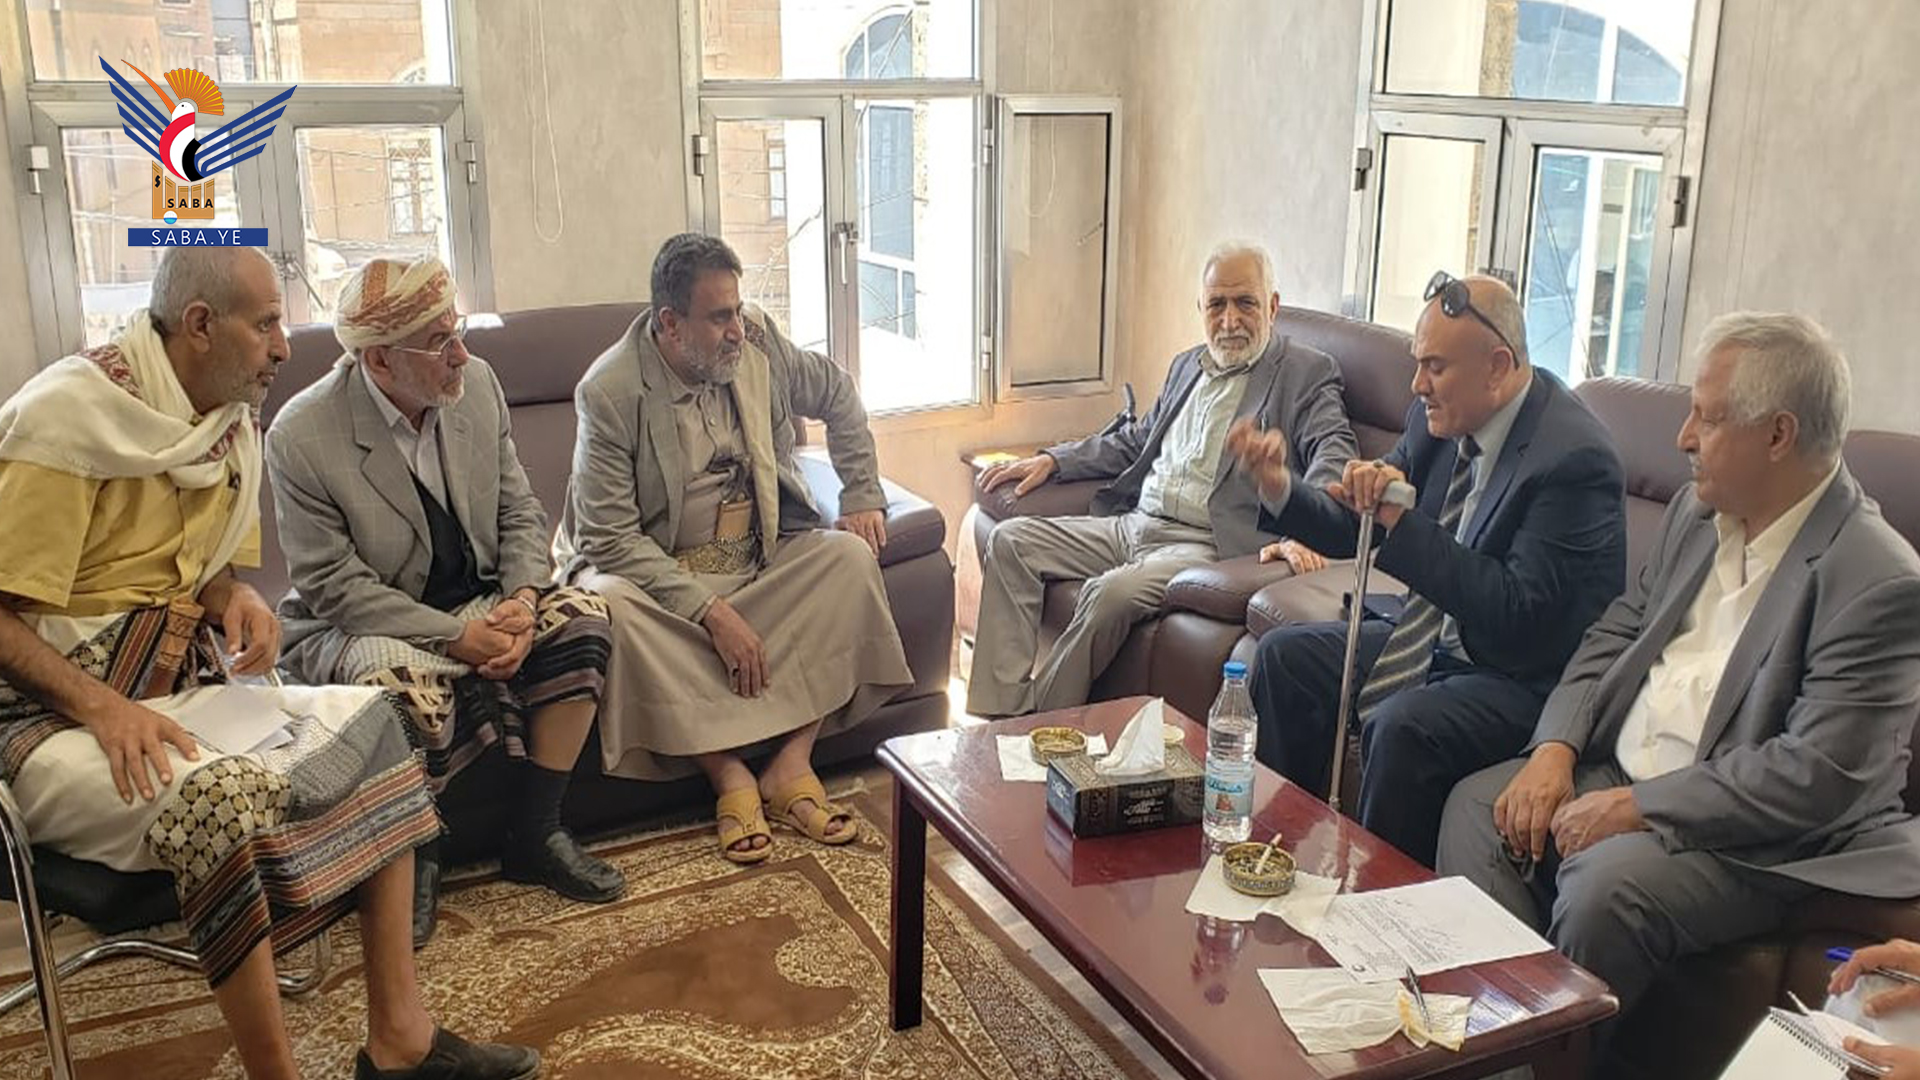 Diskussion der Programme der  Rothalbmondgesellschaft in der Provinz Al-Bayda